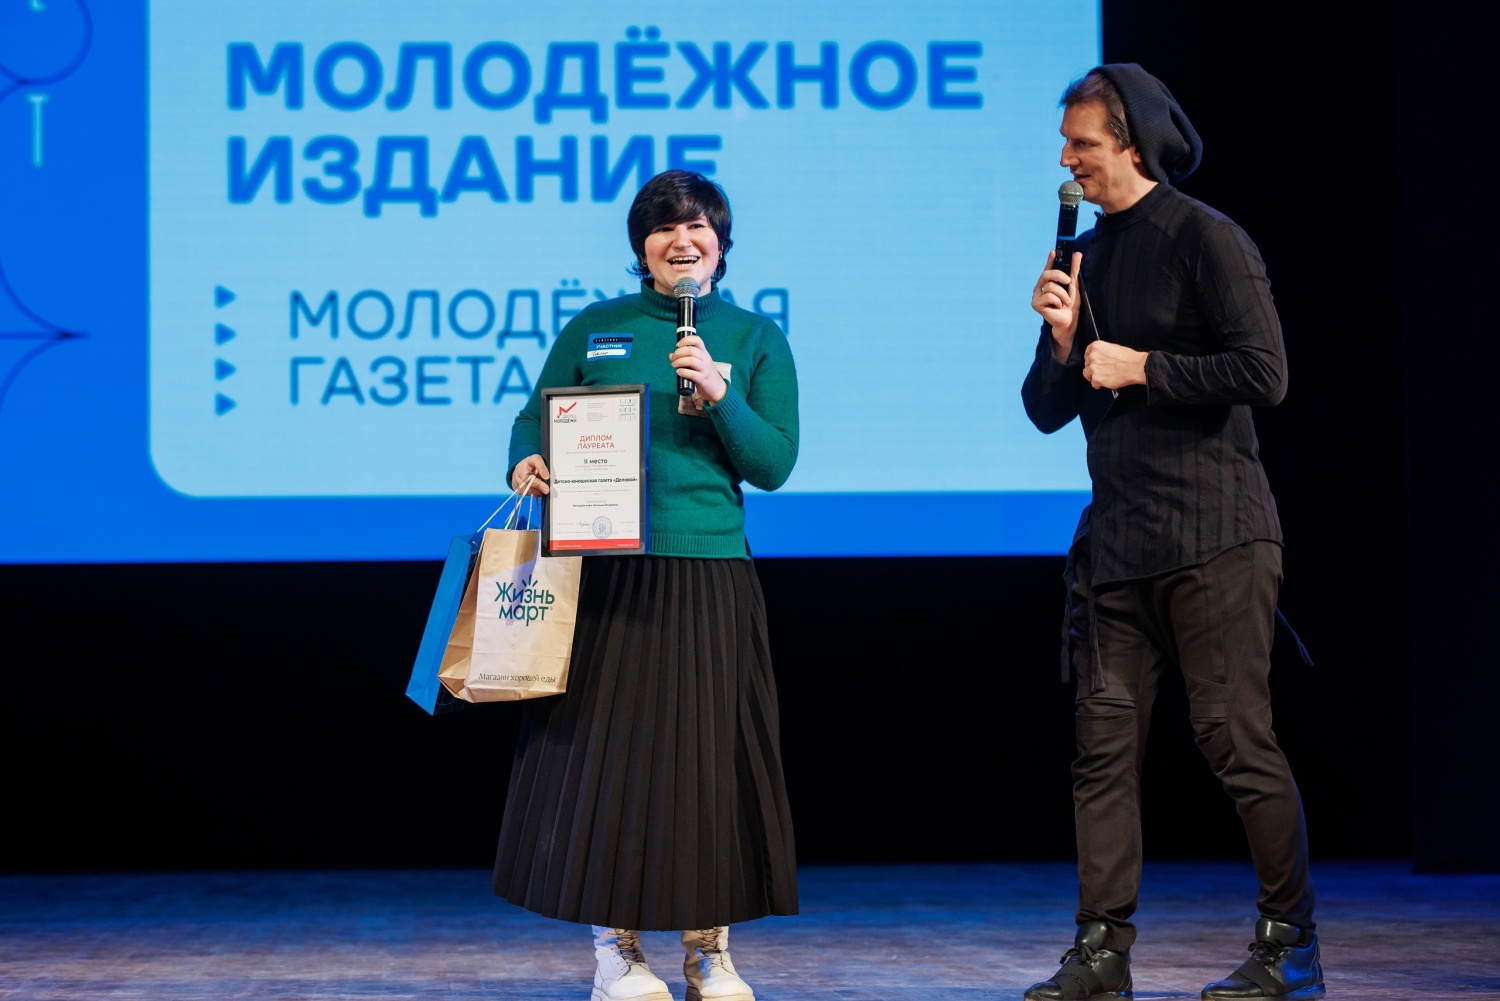 Пензенская газета «Деловой» стала призером на Всероссийском фестивале молодежной журналистики